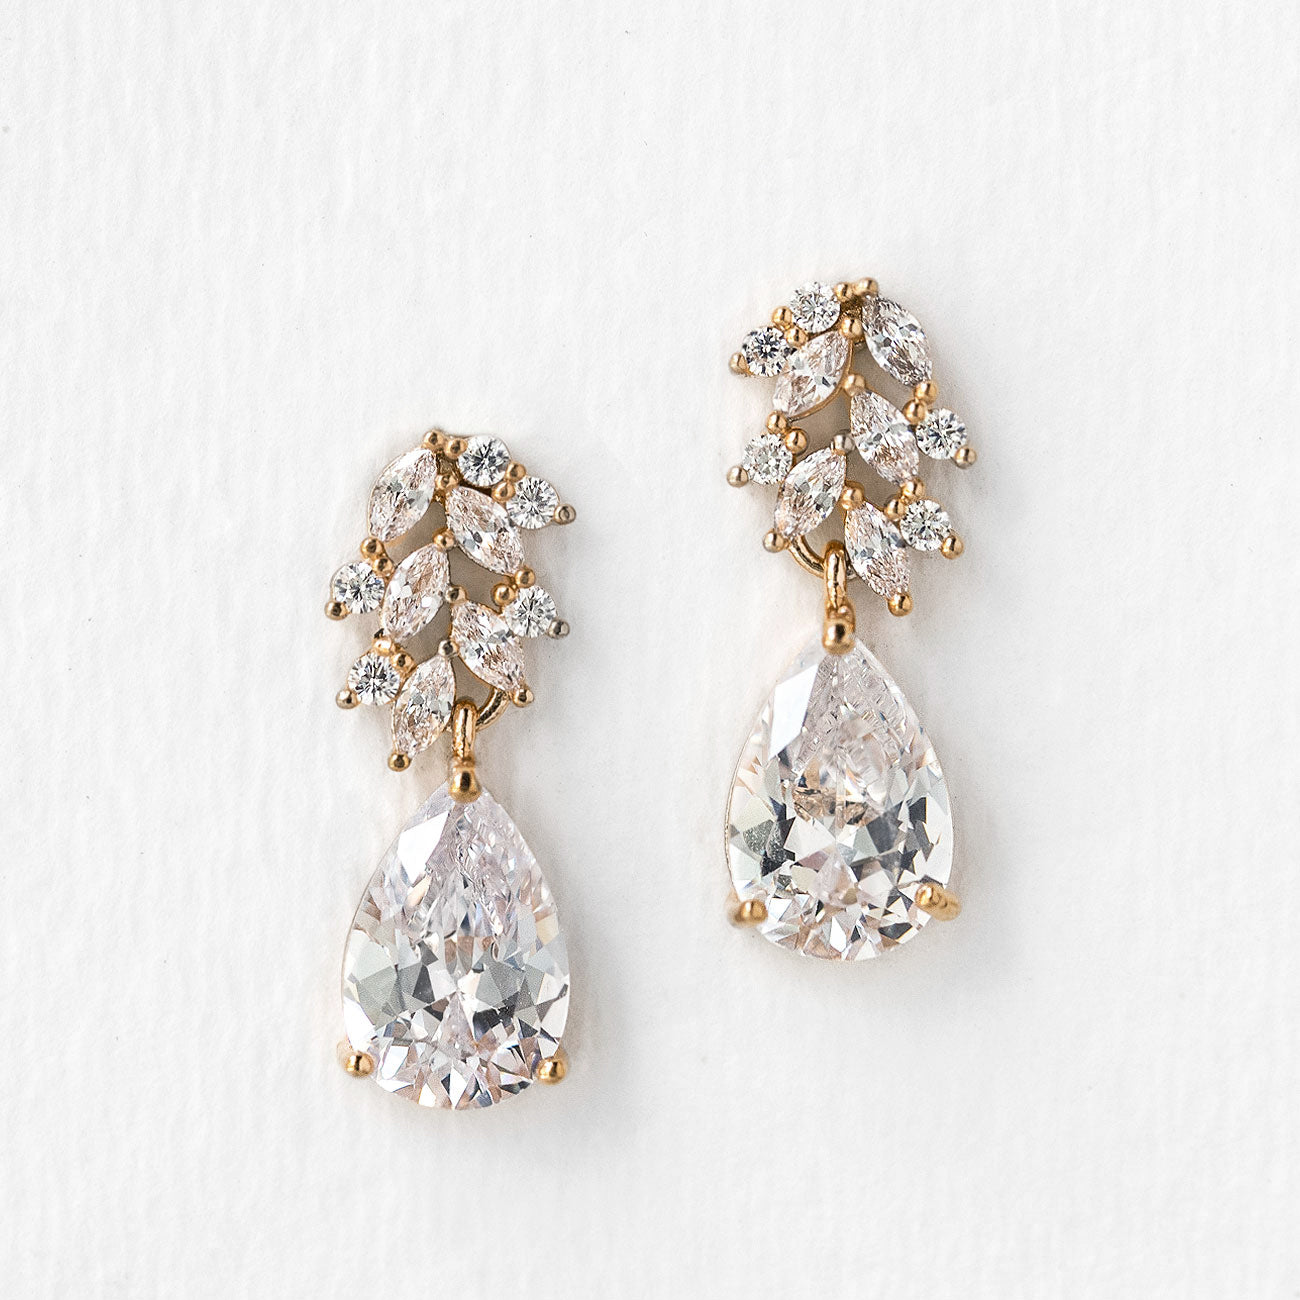 Bridal Earrings Drop Earrings Bridal Jewelry Dangle - Etsy | Bridal earrings,  Wedding earrings drop, Bridal earrings drop